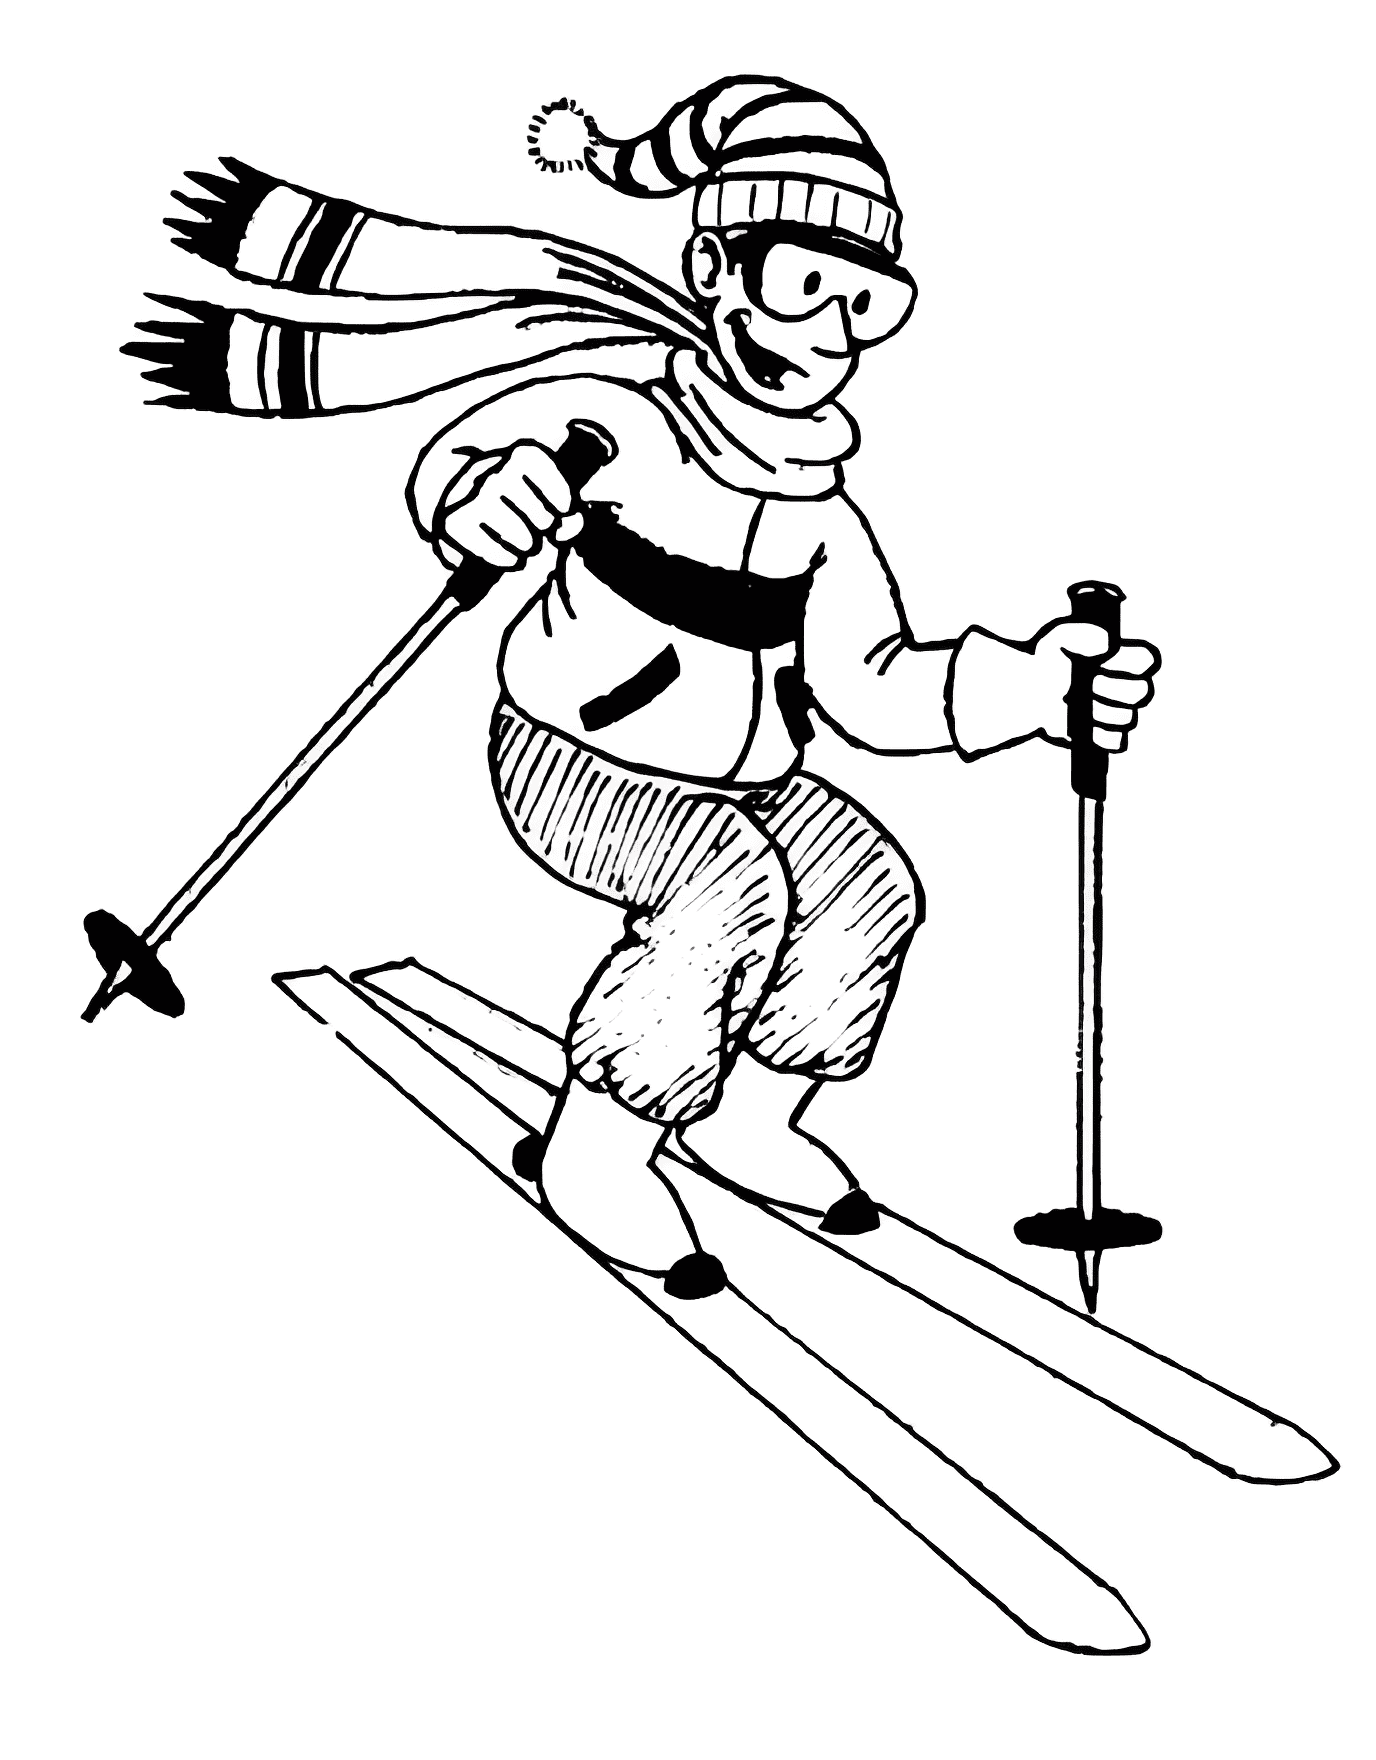 スキー イラスト 白黒